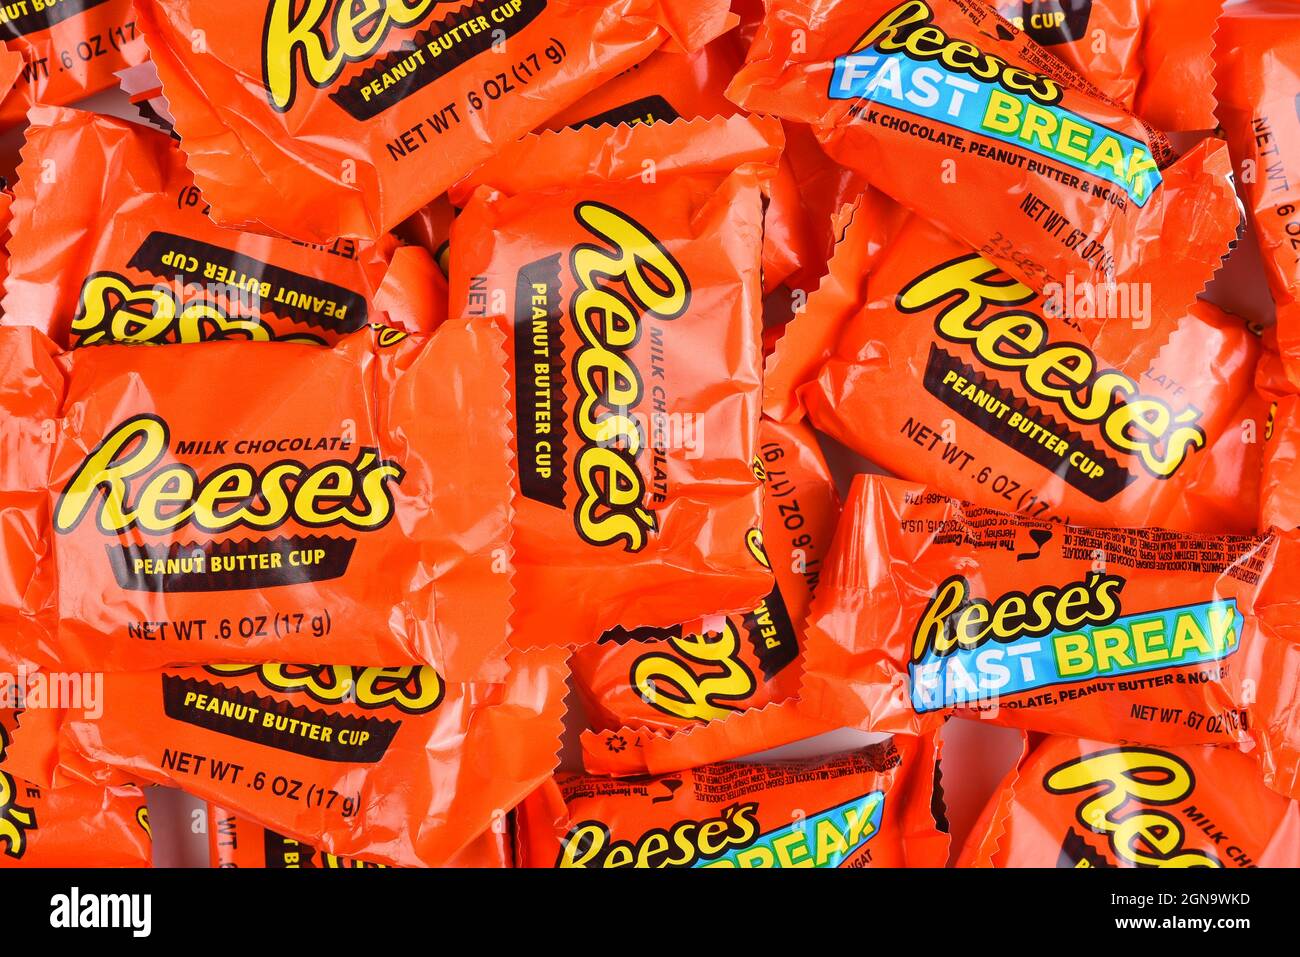 IRVINE, KALIFORNIEN - 23. SEPTEMBER 2021: Ein großer Haufen Reeses Erdnussbutter-Becher und Fast Break Fun Size Candy Bars für Halloween. Stockfoto